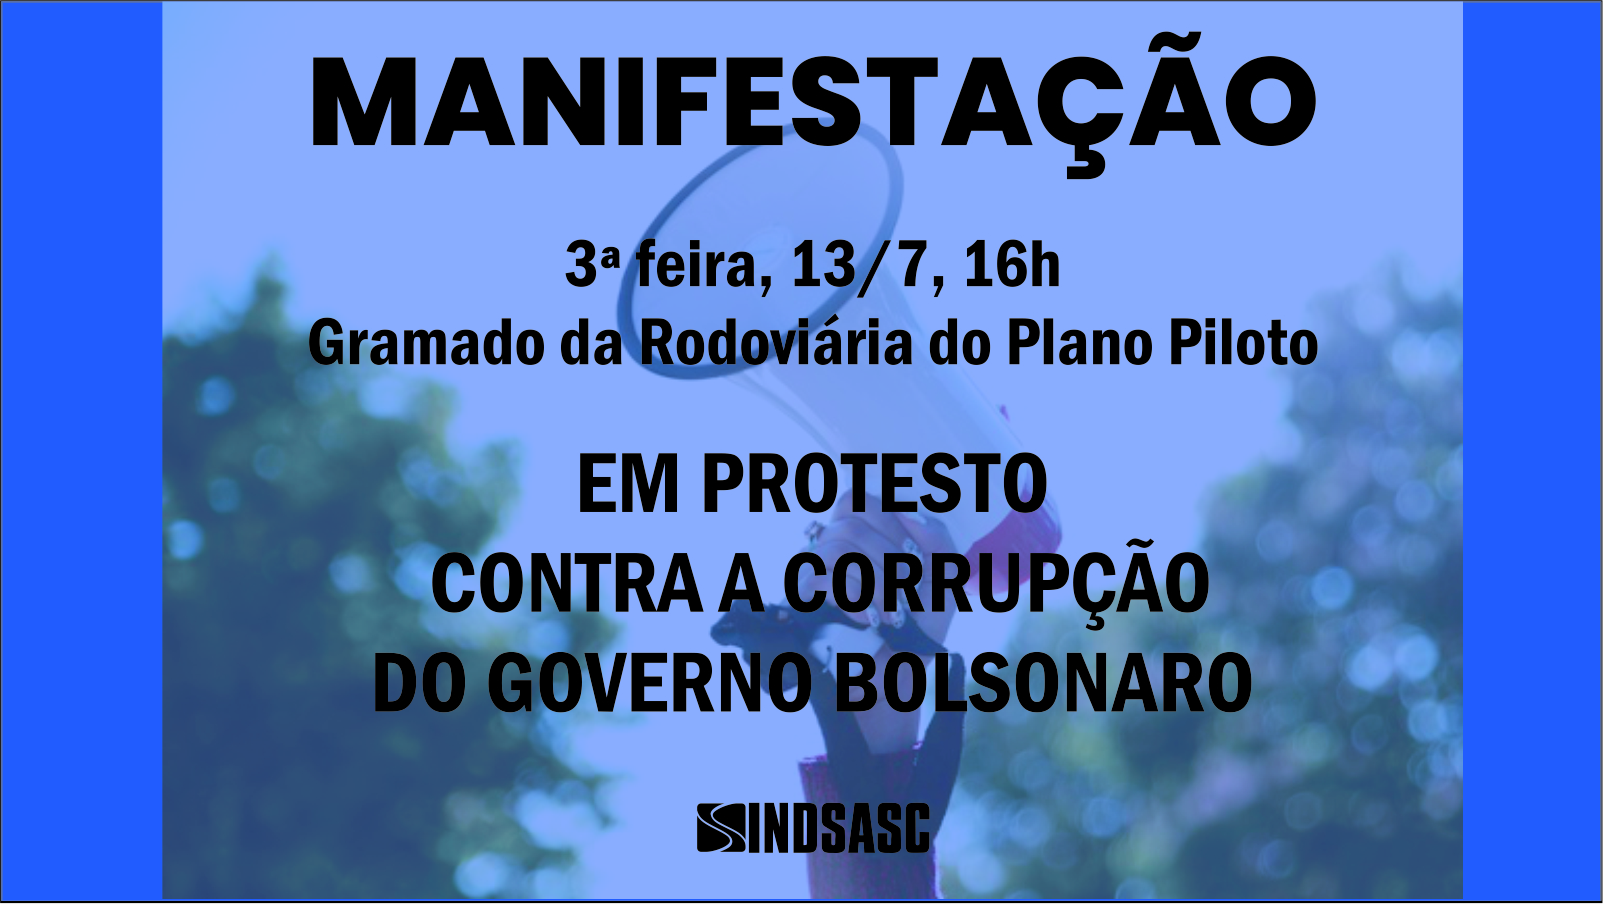 Manifestação - Em protesto contra a corrupção do governo Bolsonaro